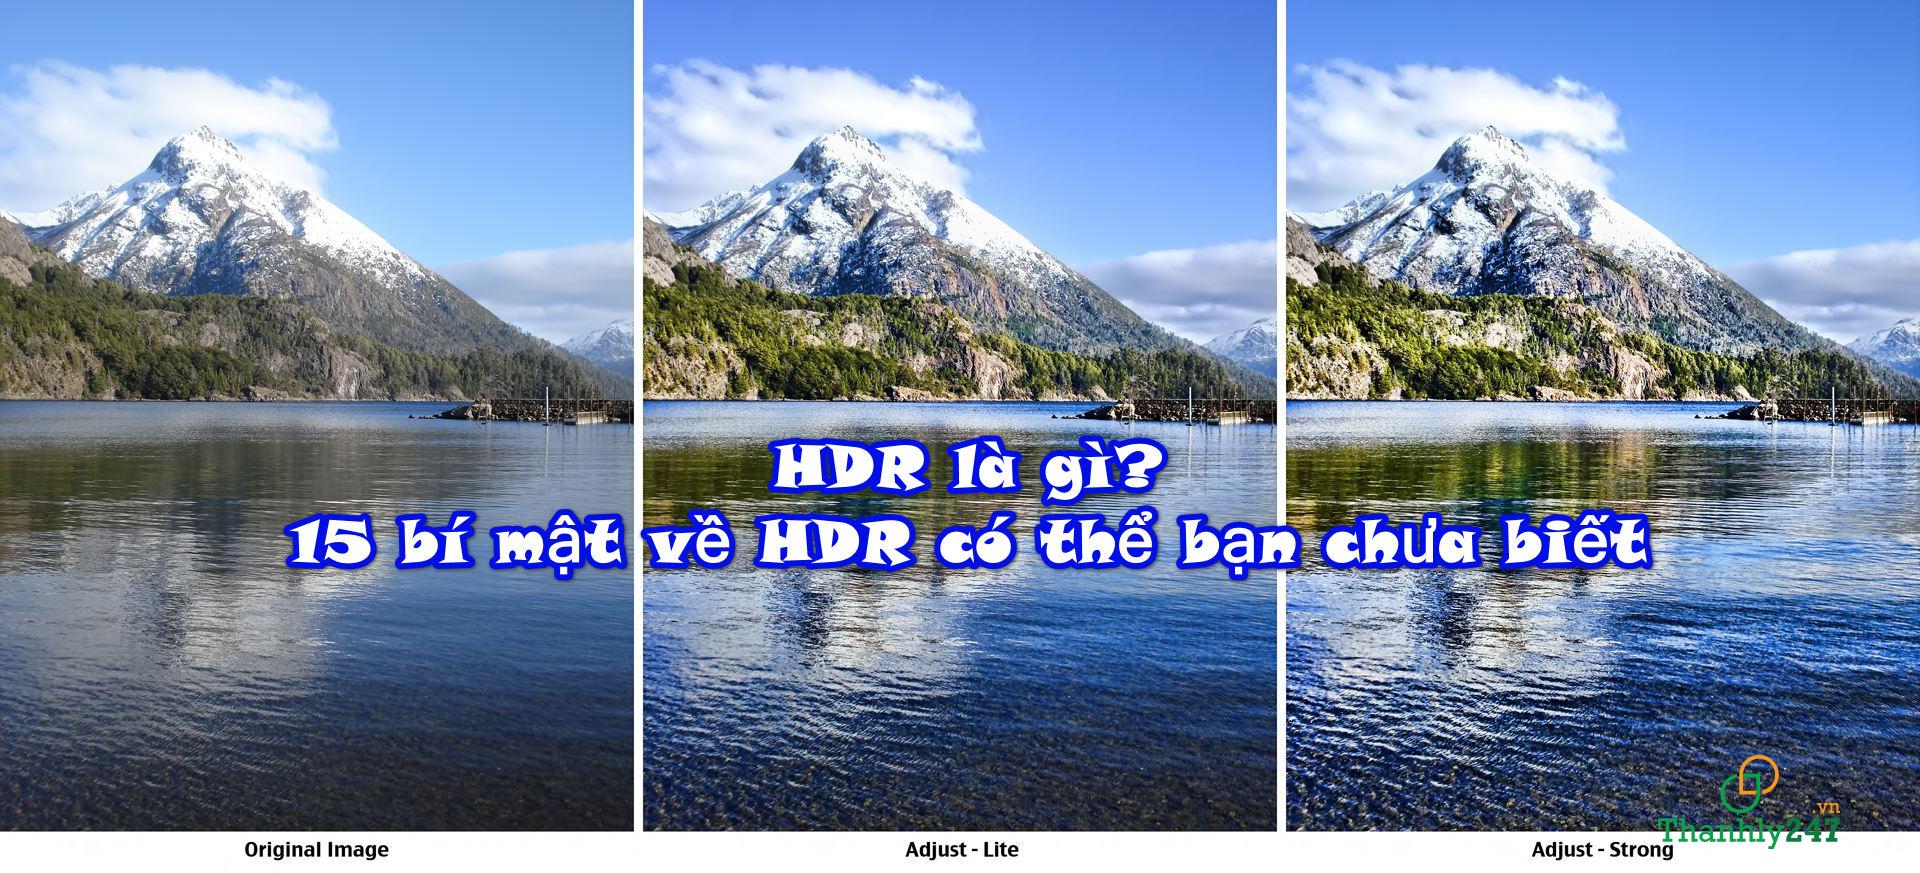 HDR là gì? 15 bí mật về HDR có thể bạn chưa biết